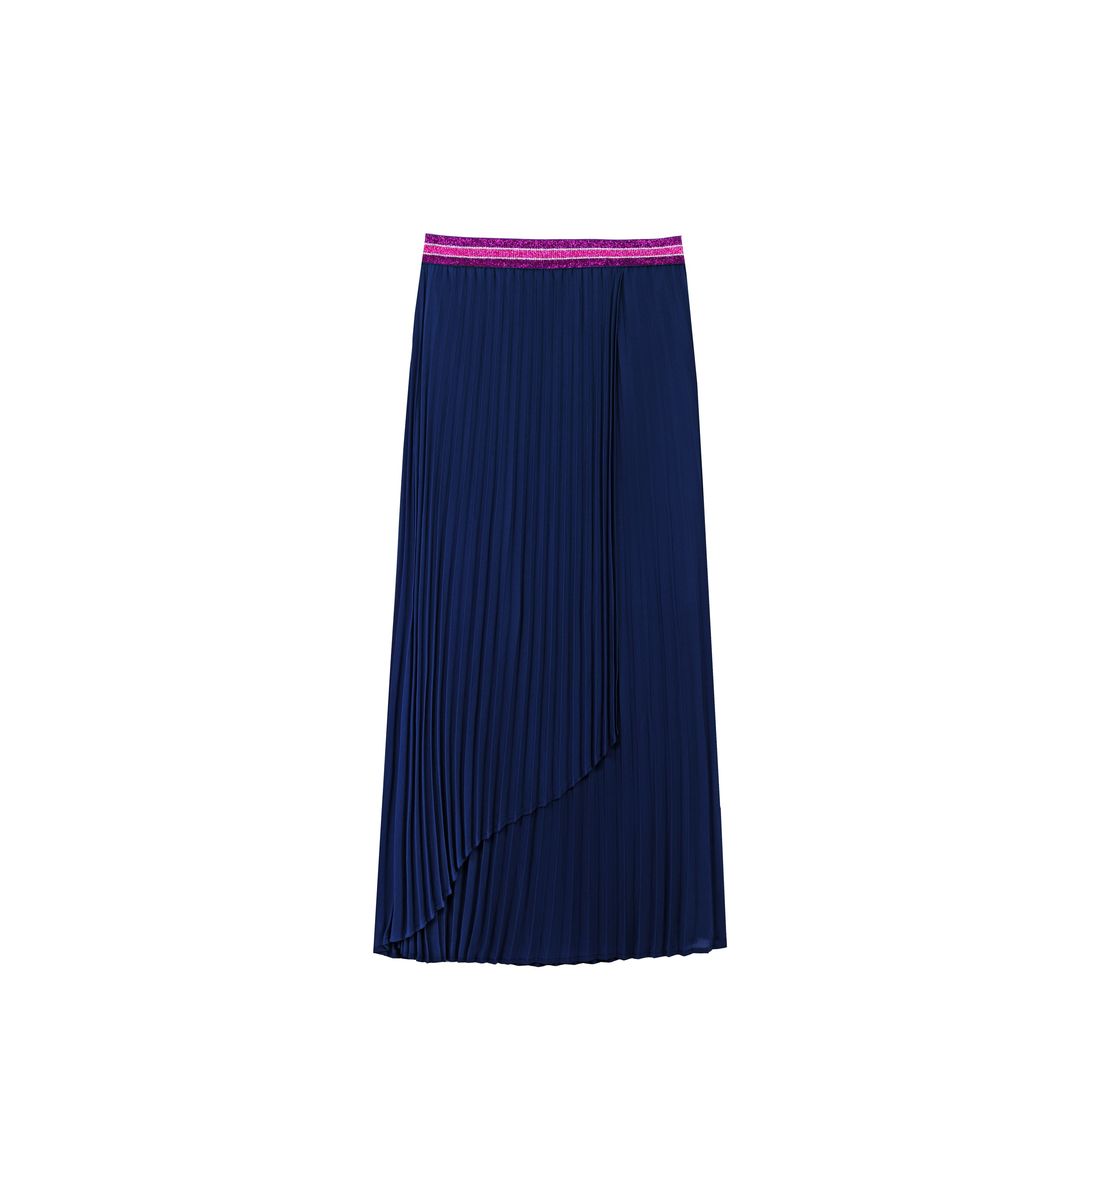 Long skirt Trine Navy